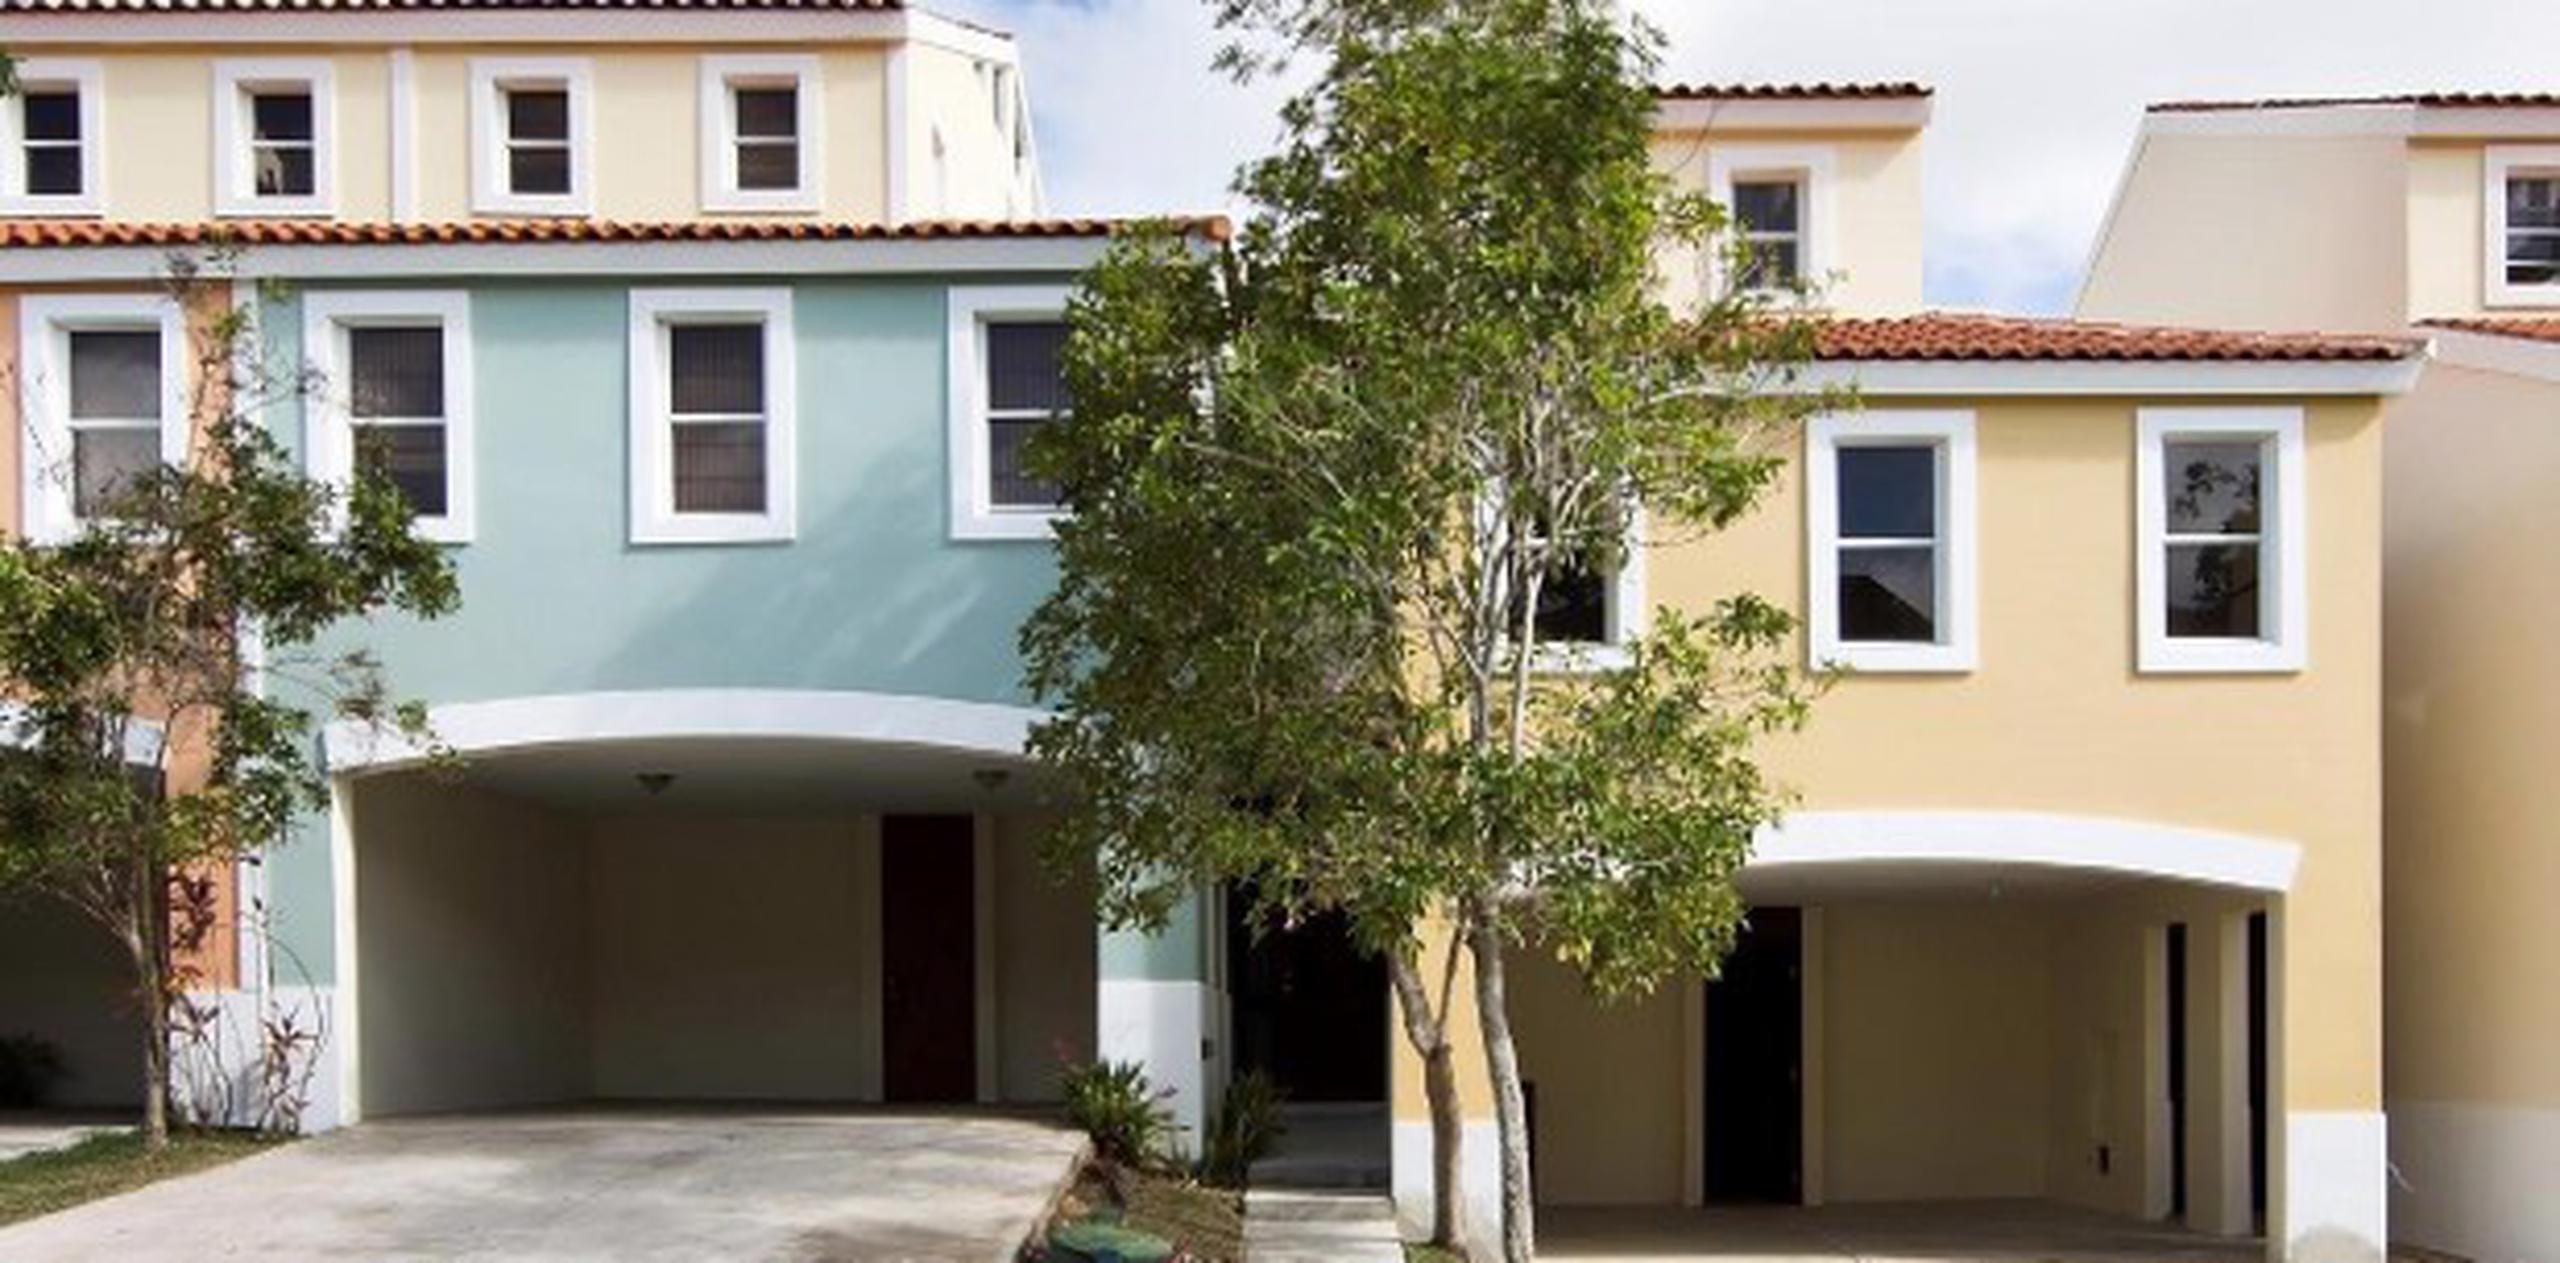 El nuevo precio de venta de estas espectaculares residencias comienza en $259,700, casi la mitad de sus precios originales.